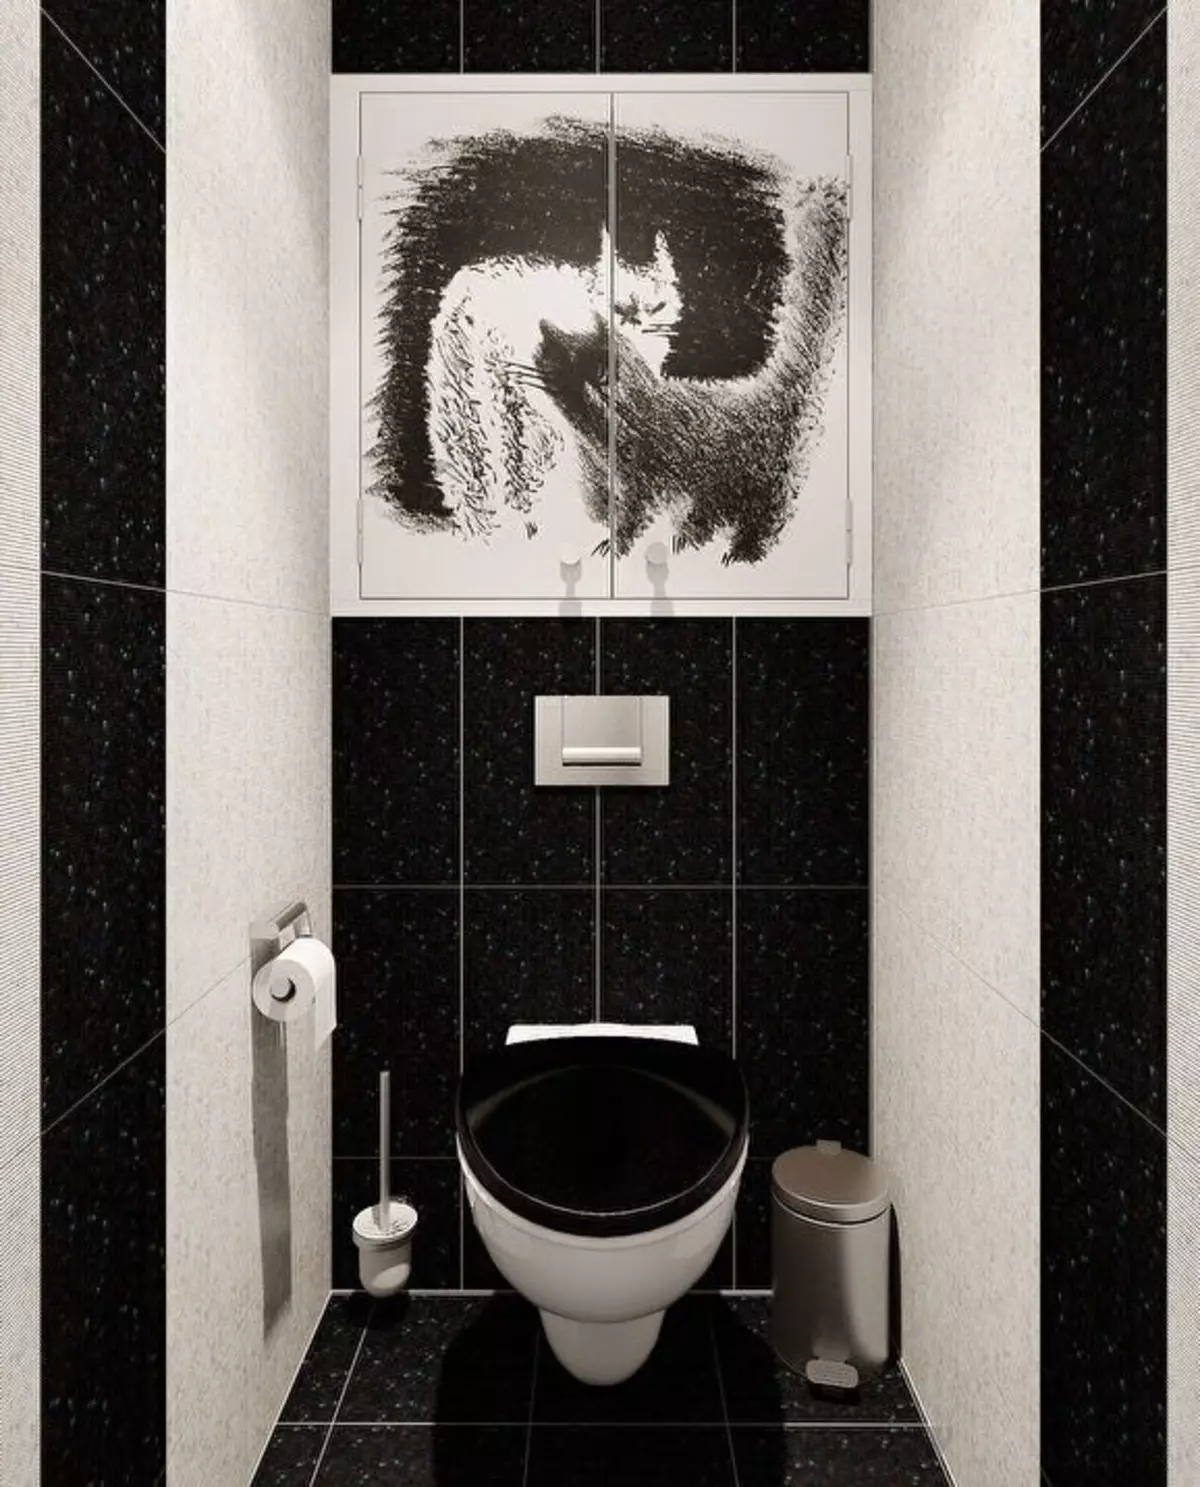 黒トイレ（67枚の写真）：黒と白の色のトイレットデザイン、アパートの暗いカラートイレの選択、黒と赤のタイルで仕上げ 10501_30